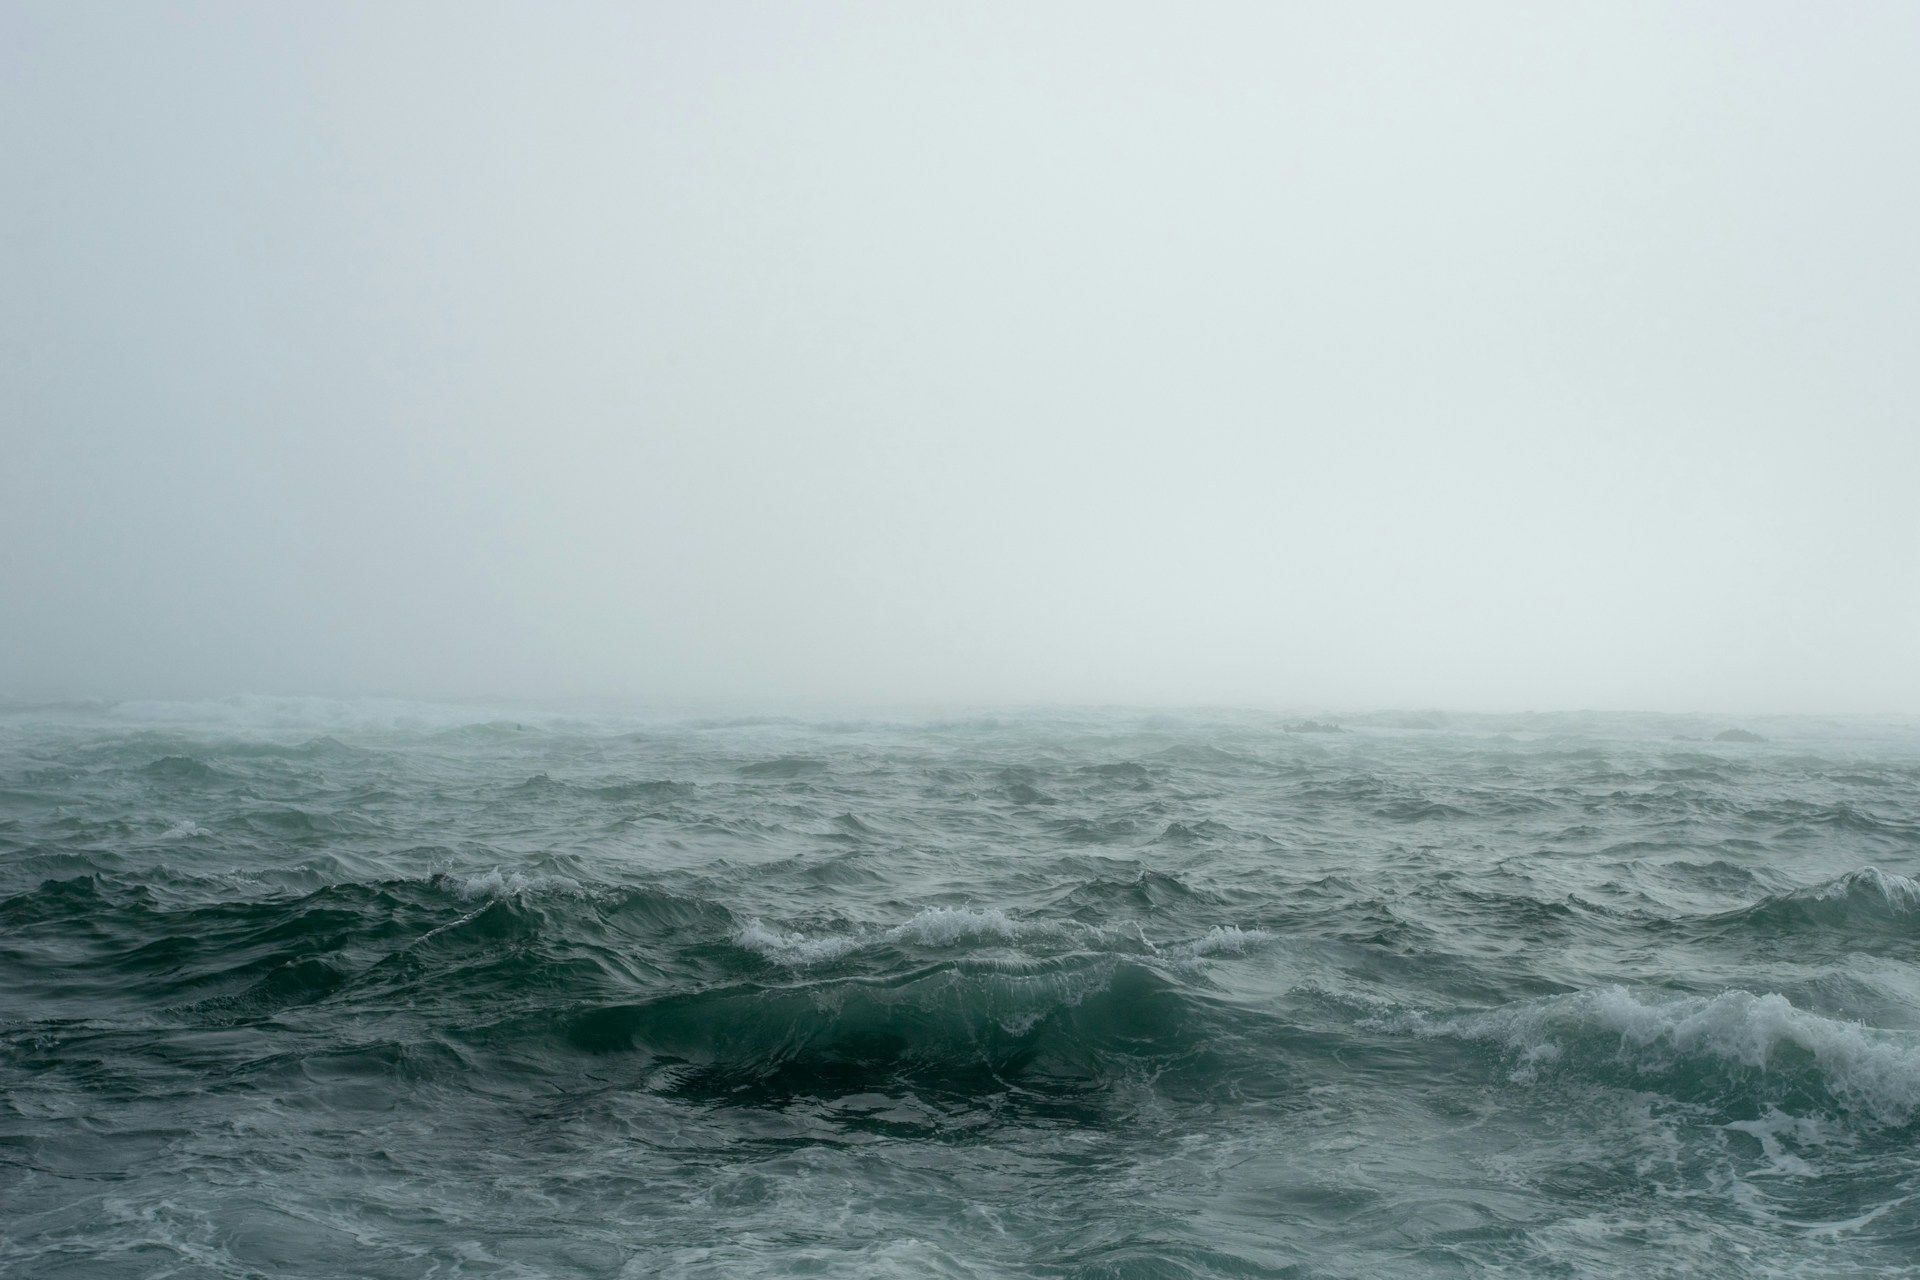 orage sur la mer - Photo by JOHN TOWNER on https://unsplash.com/fr/photos/plan-deau-entoure-de-brouillard-FD_sabE544U